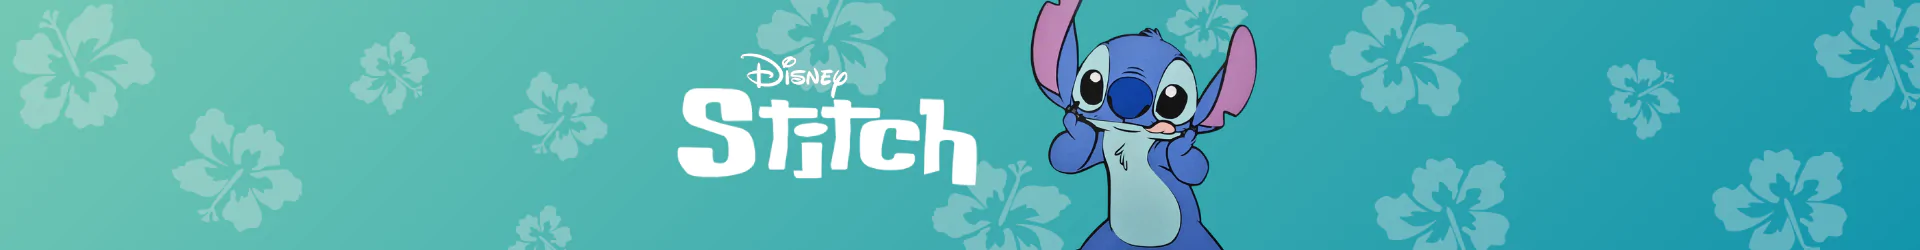 Stitch schreibwaren banner